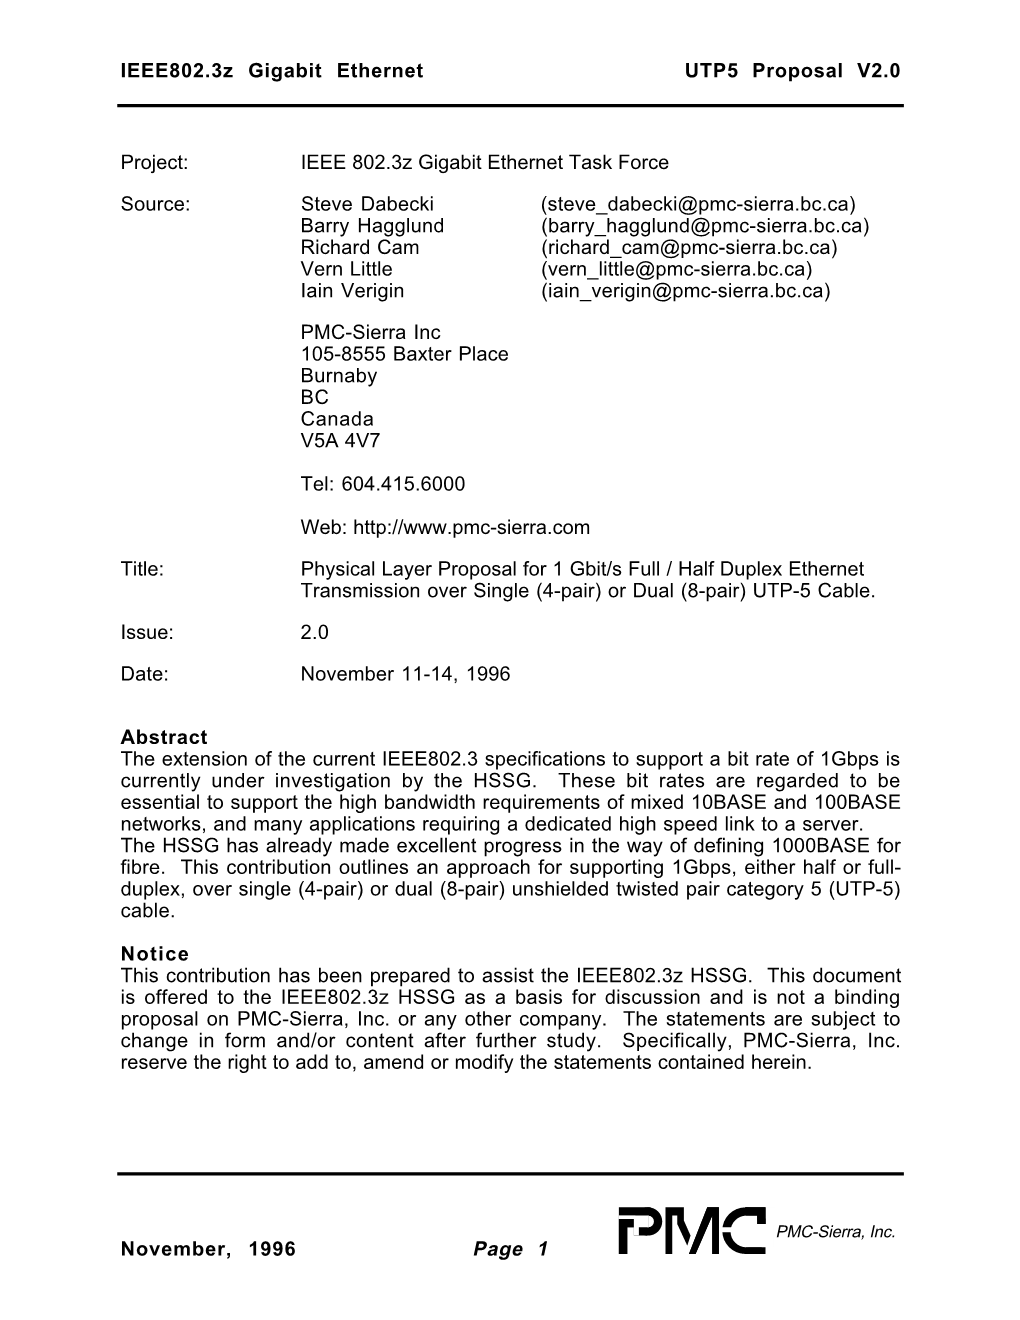 IEEE802.3Z Gigabit Ethernet UTP5 Proposal V2.0 November, 1996